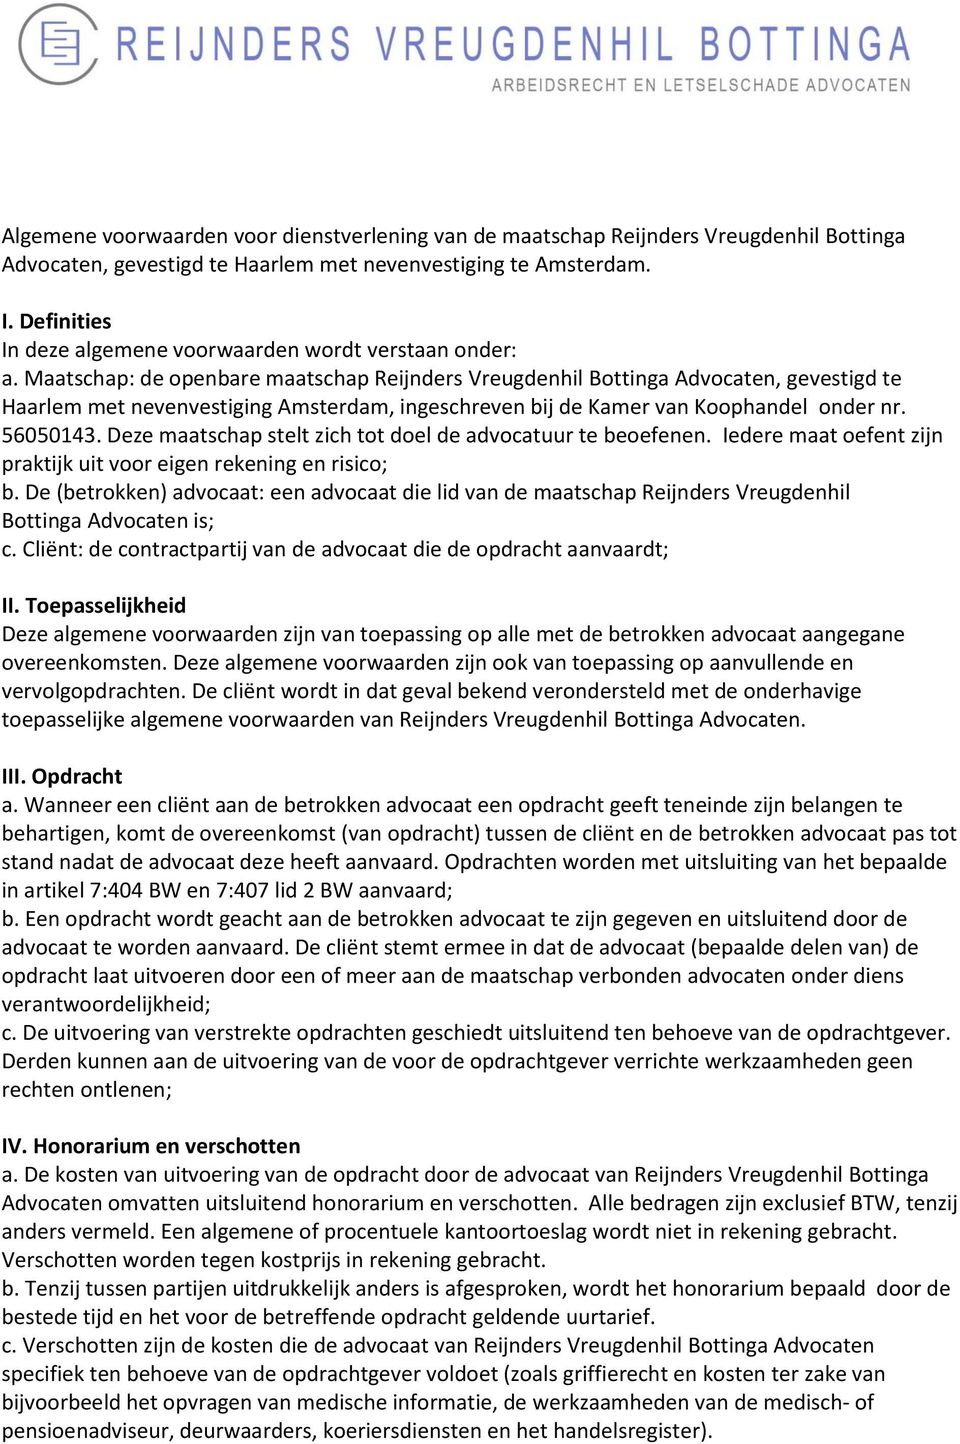 Maatschap: de openbare maatschap Reijnders Vreugdenhil Bottinga Advocaten, gevestigd te Haarlem met nevenvestiging Amsterdam, ingeschreven bij de Kamer van Koophandel onder nr. 56050143.